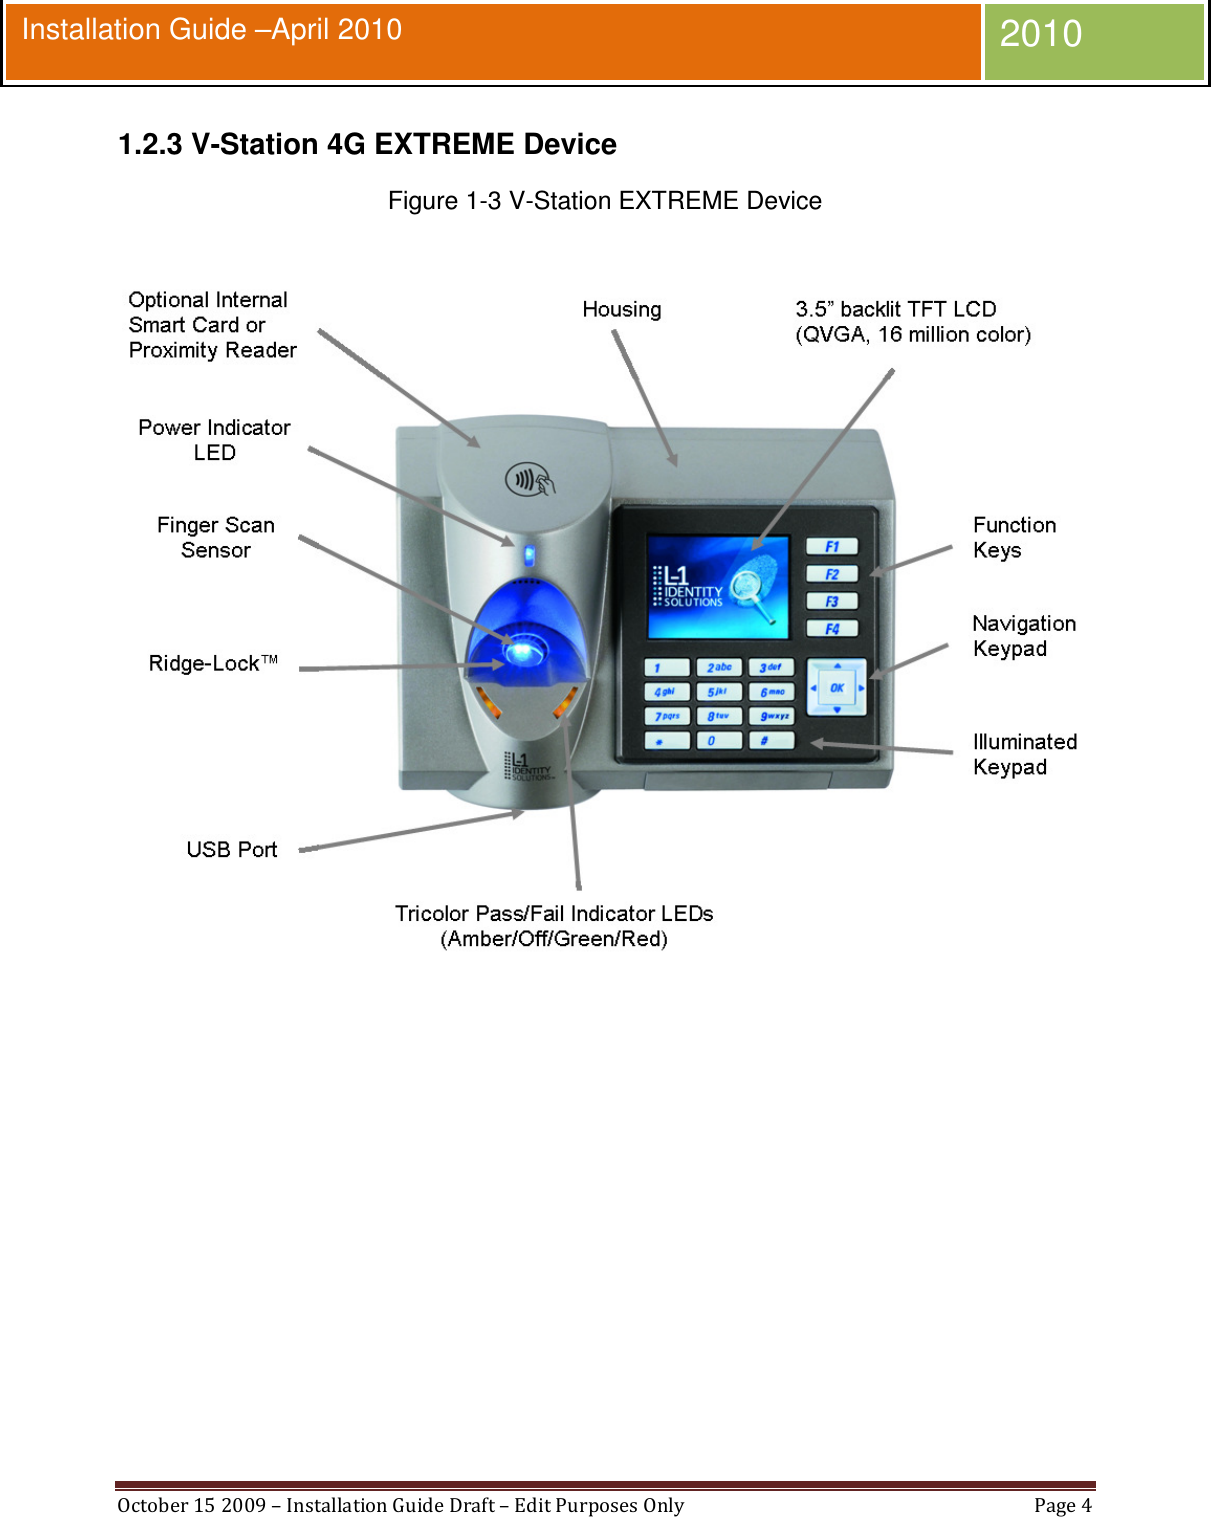  October 15 2009 – Installation Guide Draft – Edit Purposes Only  Page 4  Installation Guide –April 2010 2010 1.2.3 V-Station 4G EXTREME Device Figure 1-3 V-Station EXTREME Device   